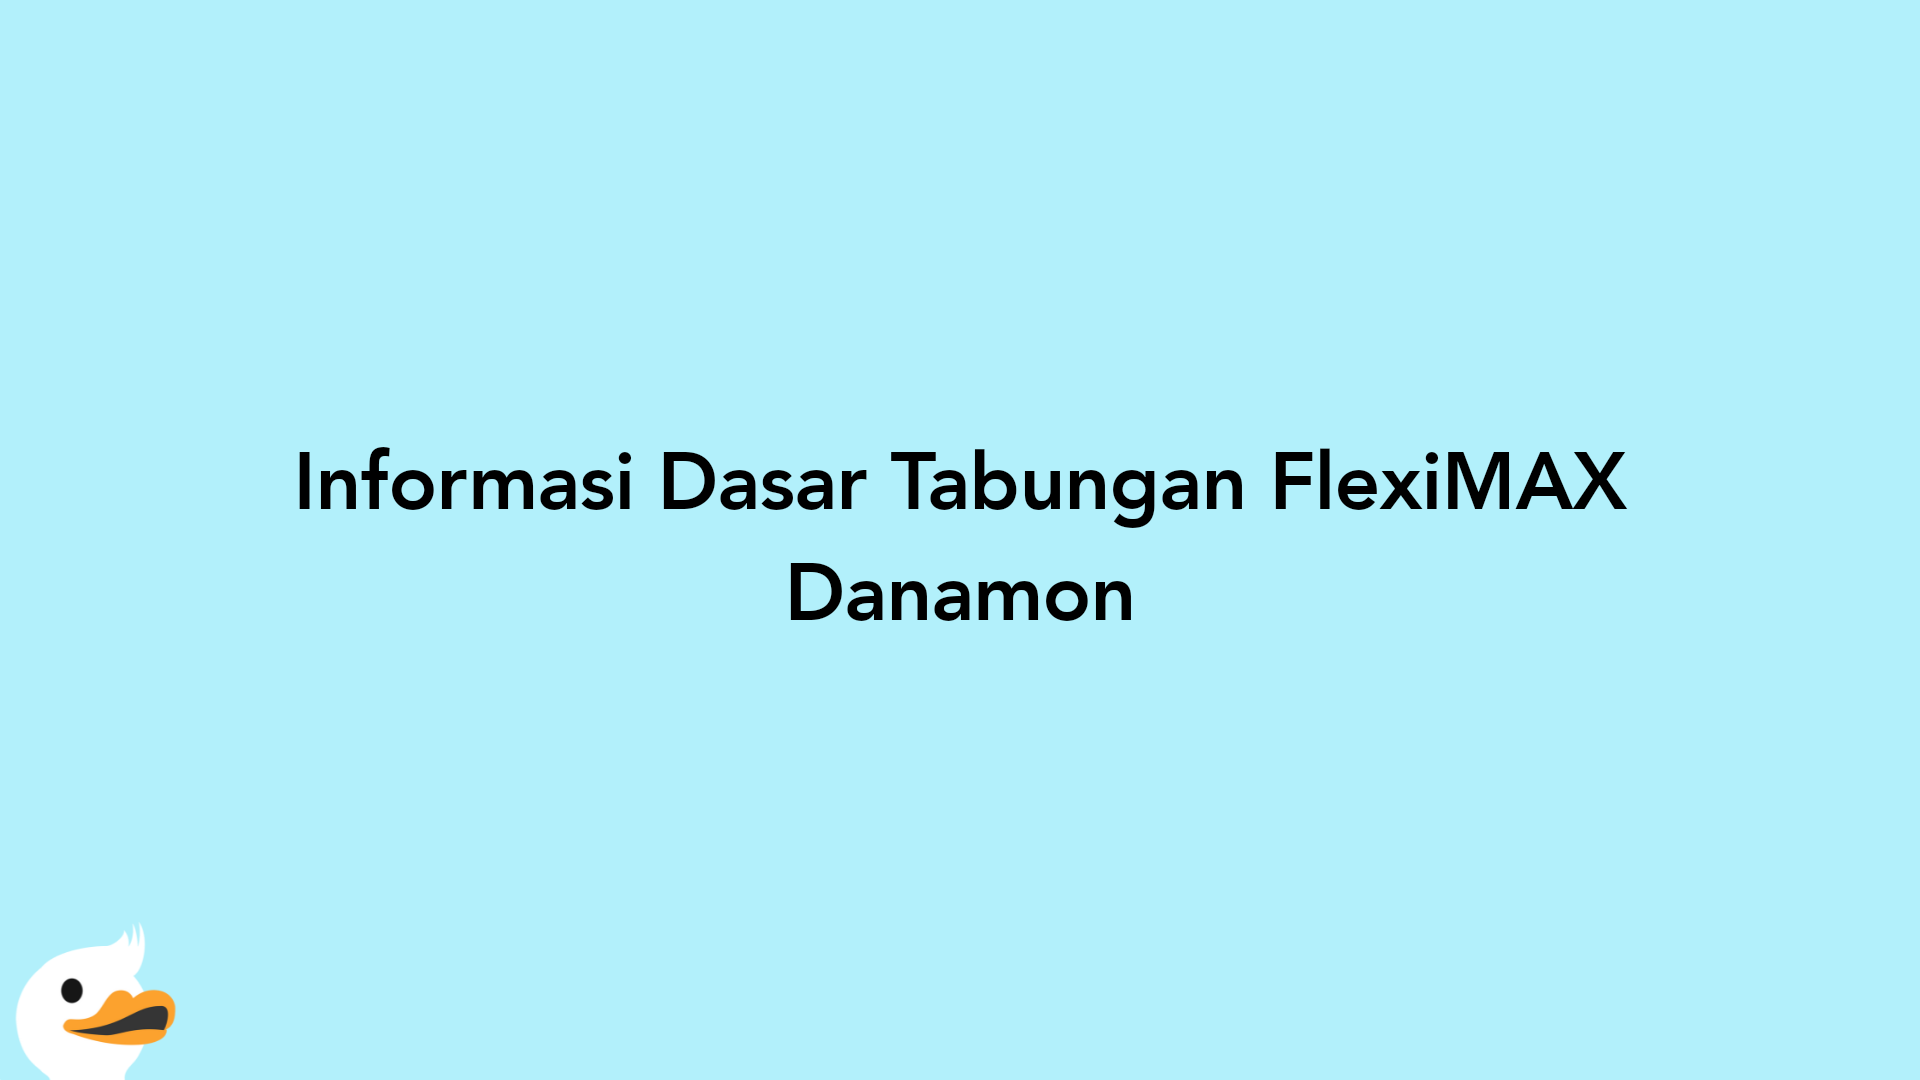 Informasi Dasar Tabungan FlexiMAX Danamon